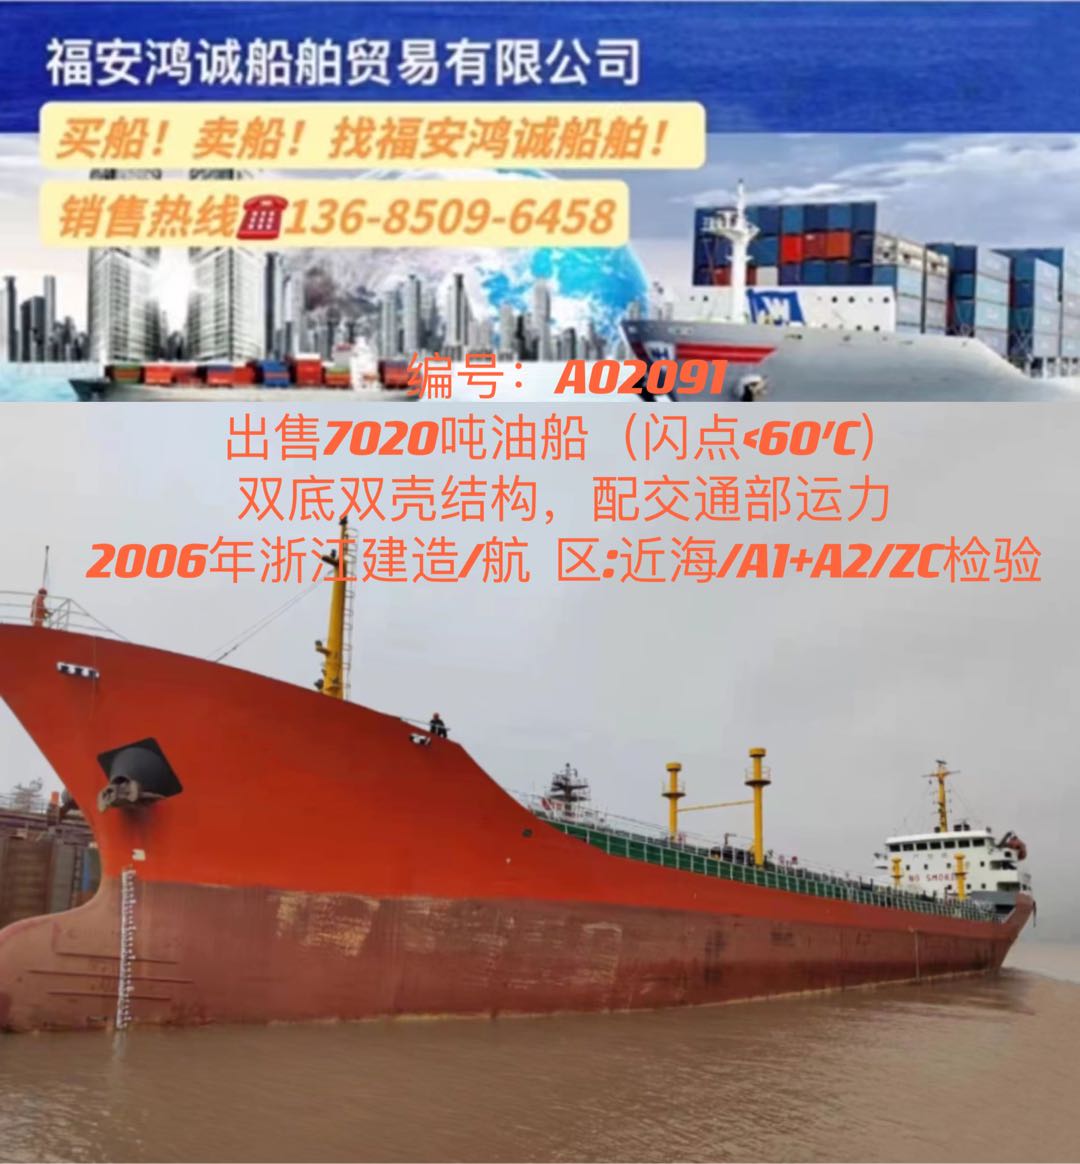 出售06年7020吨双壳油船